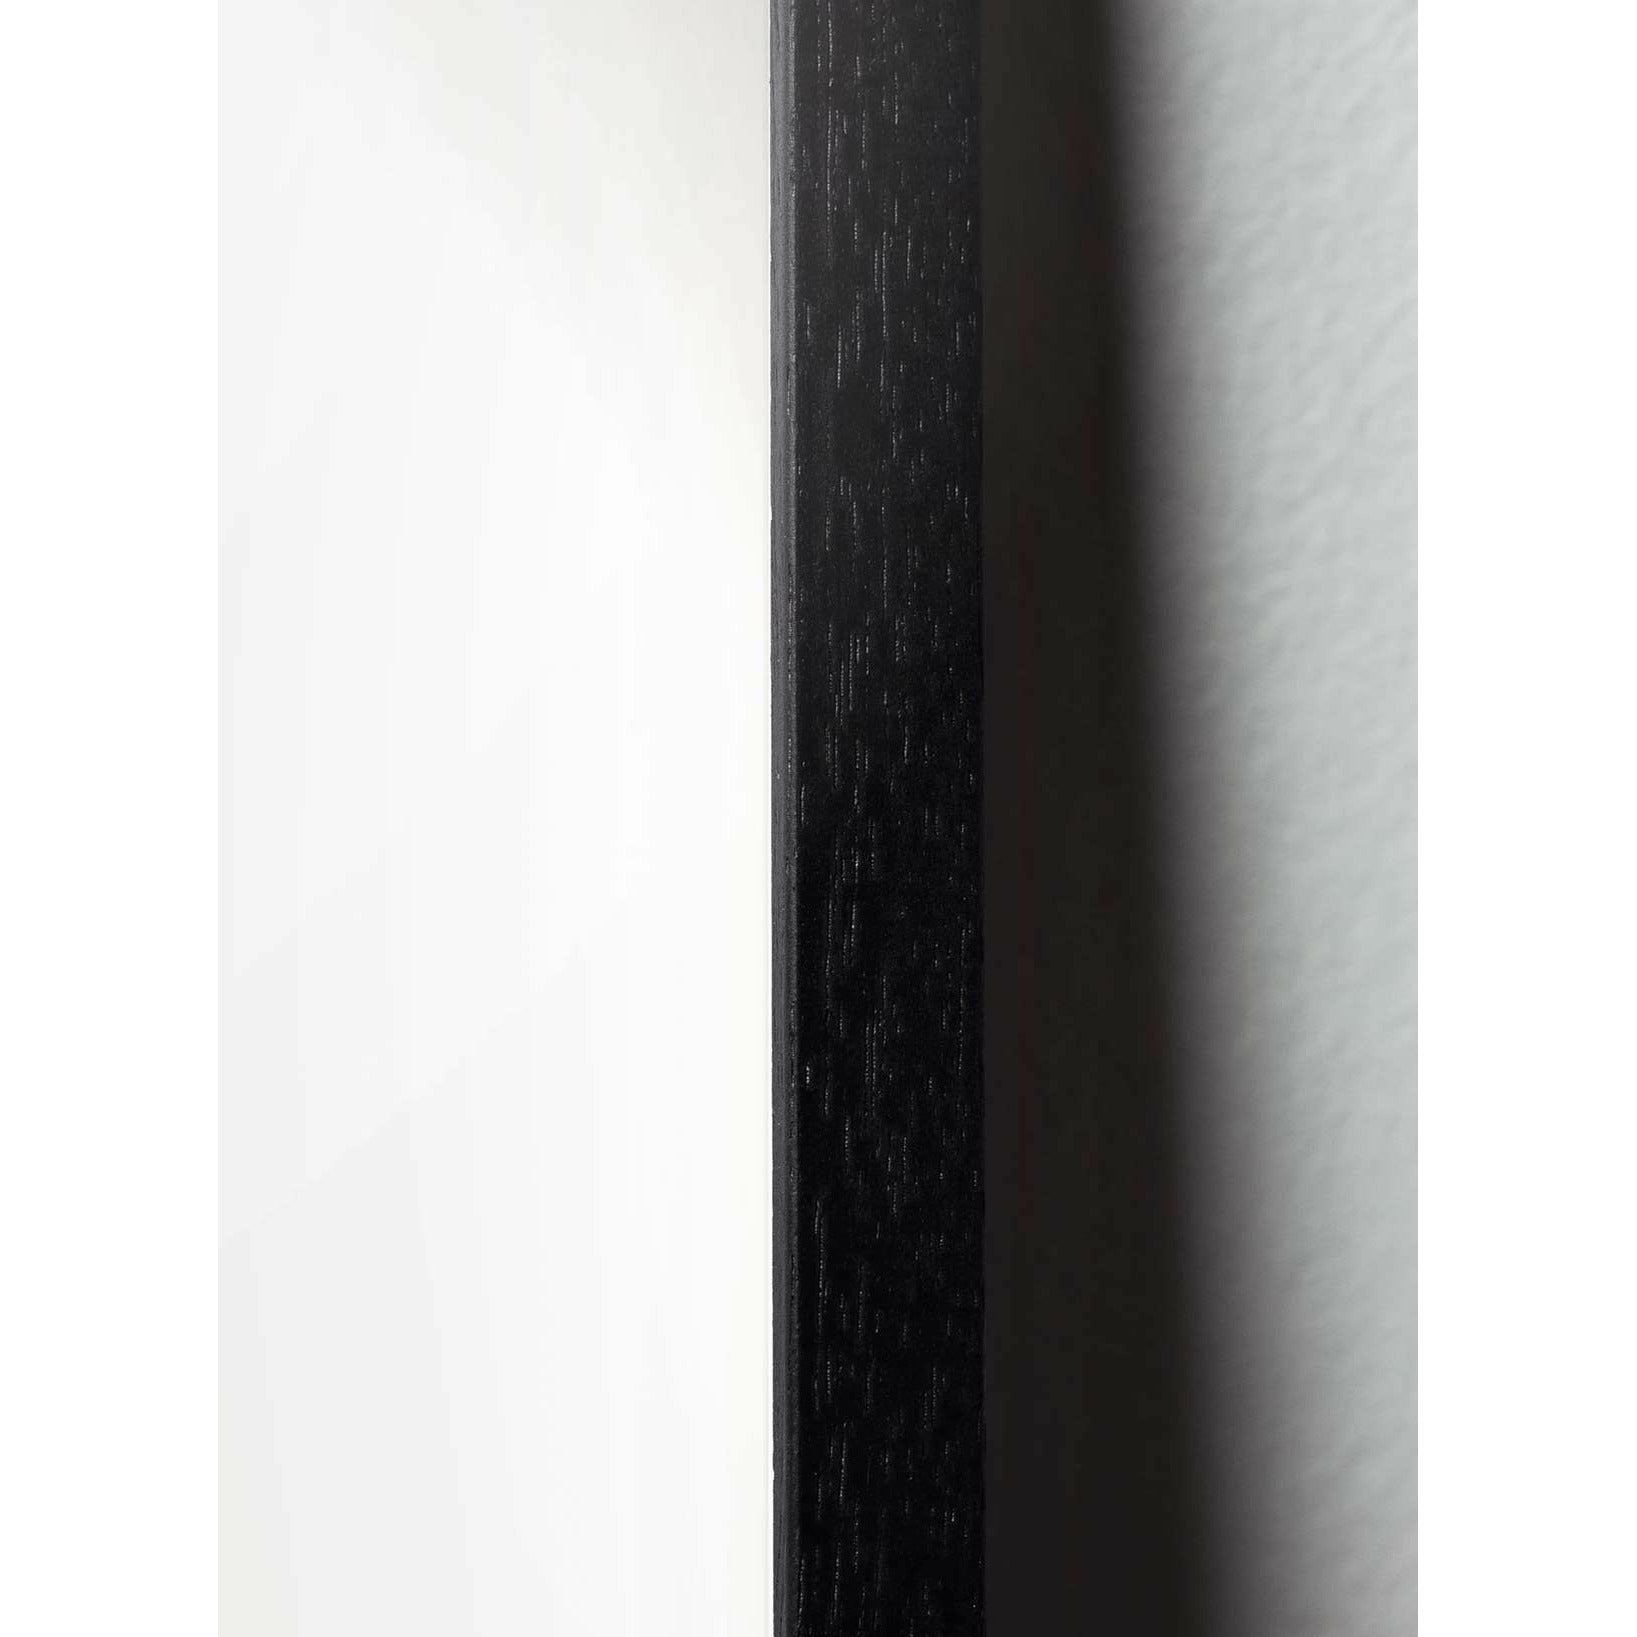 Brainchild Ant designikonplakat, ramme lavet af sort lakeret træ 30x40 cm, grå